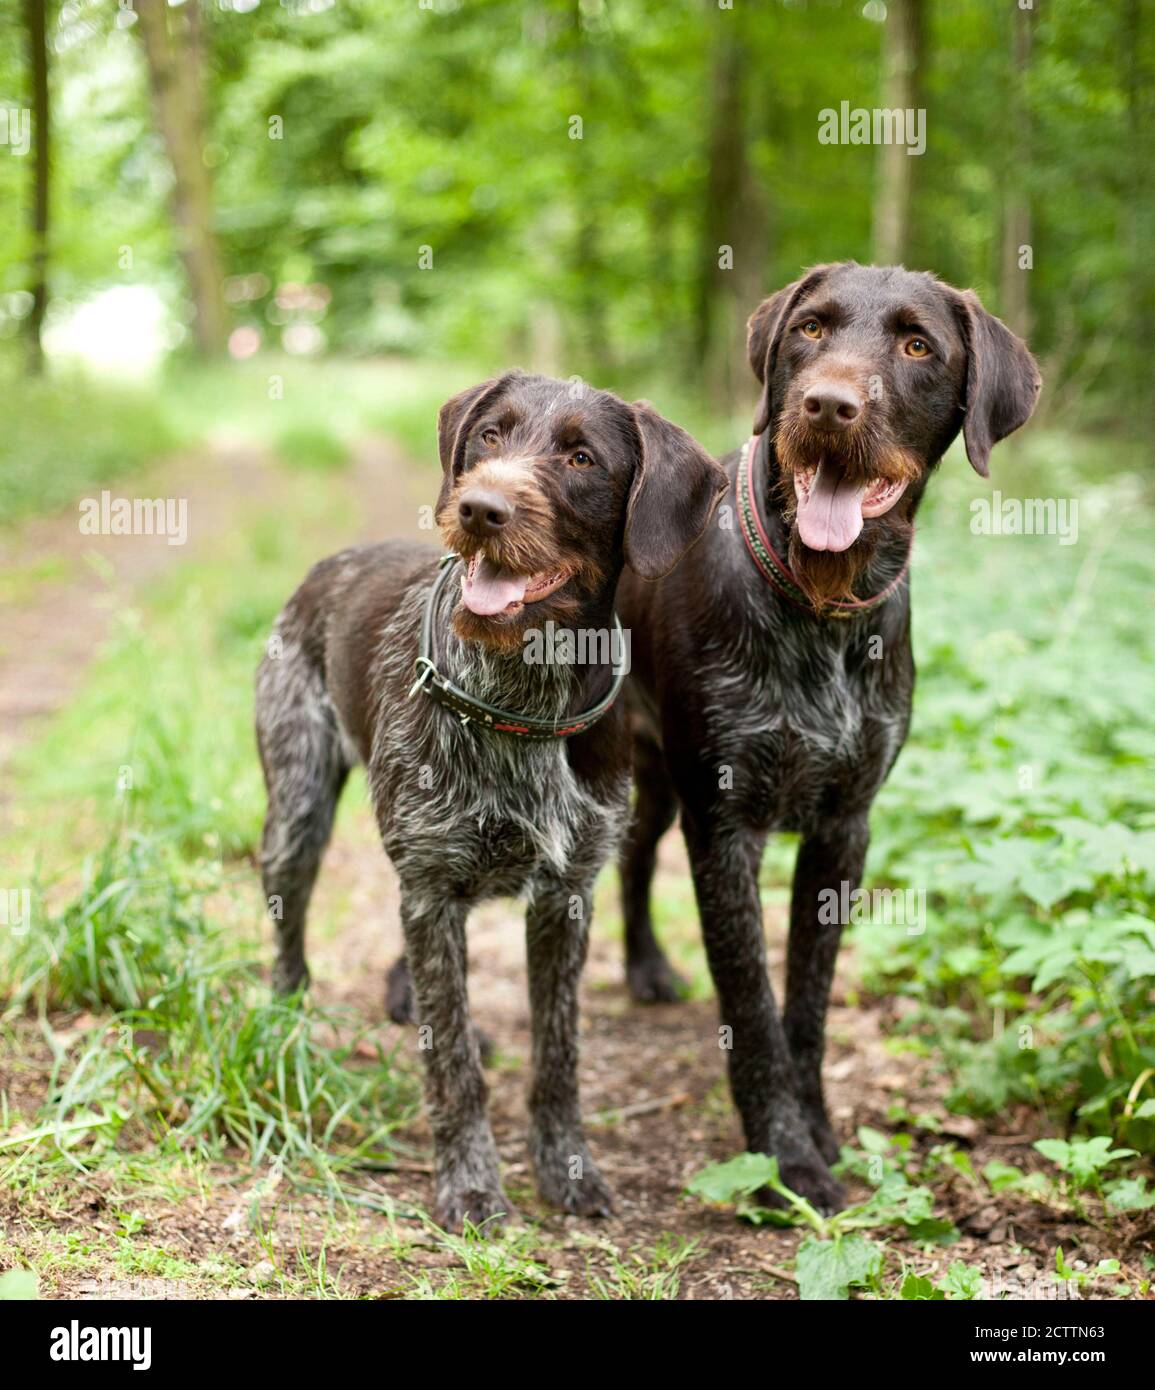 Puntatore con capelli rossi tedesco. Due cani adulti in piedi in una foresta. Foto Stock